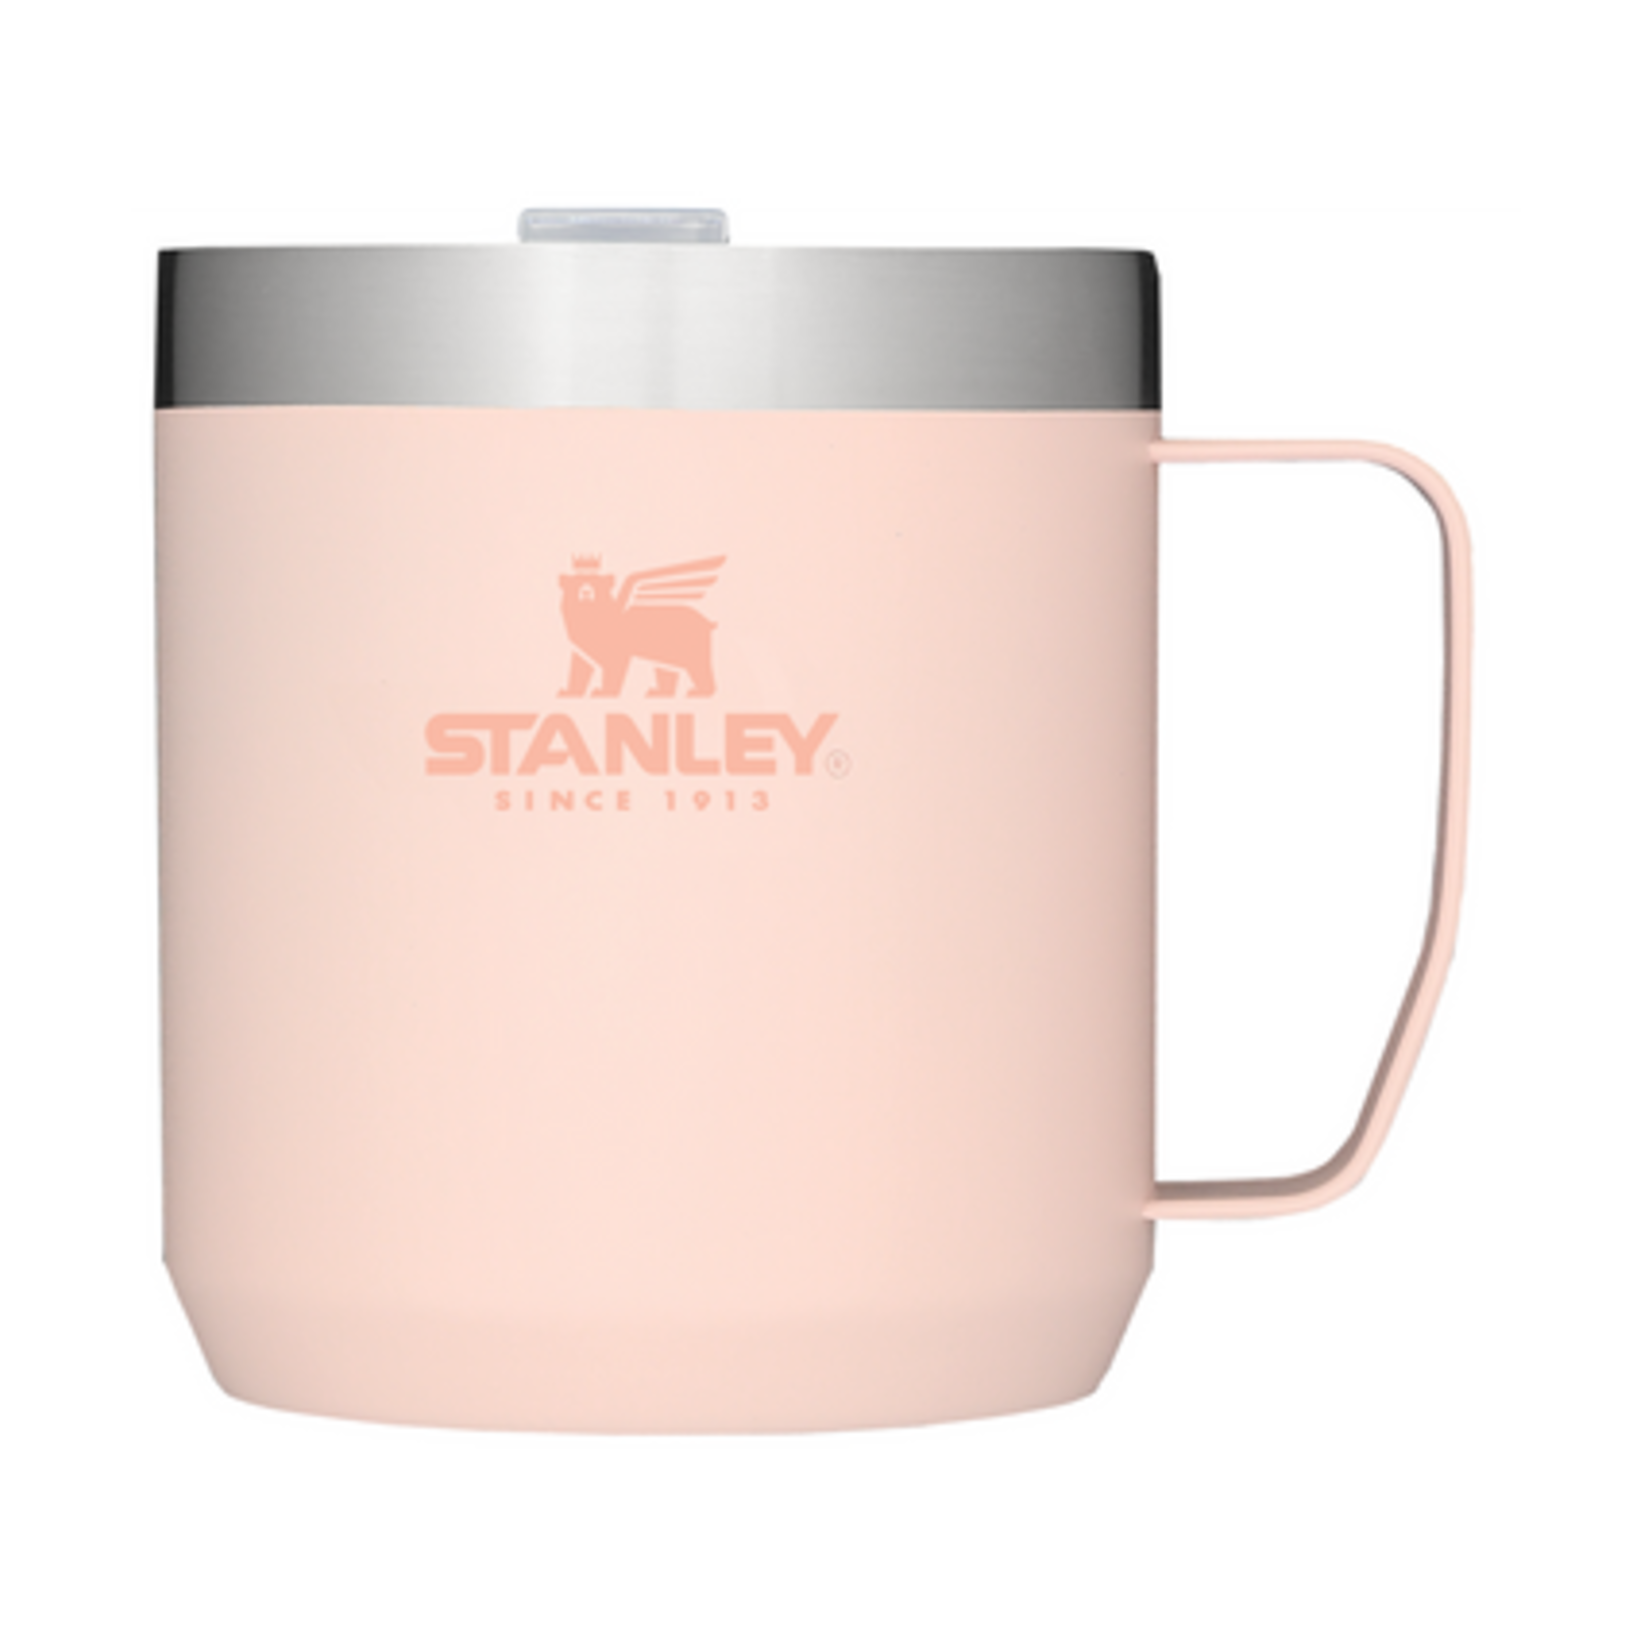 Stanley Classic Legendary 12 oz Camp Mug